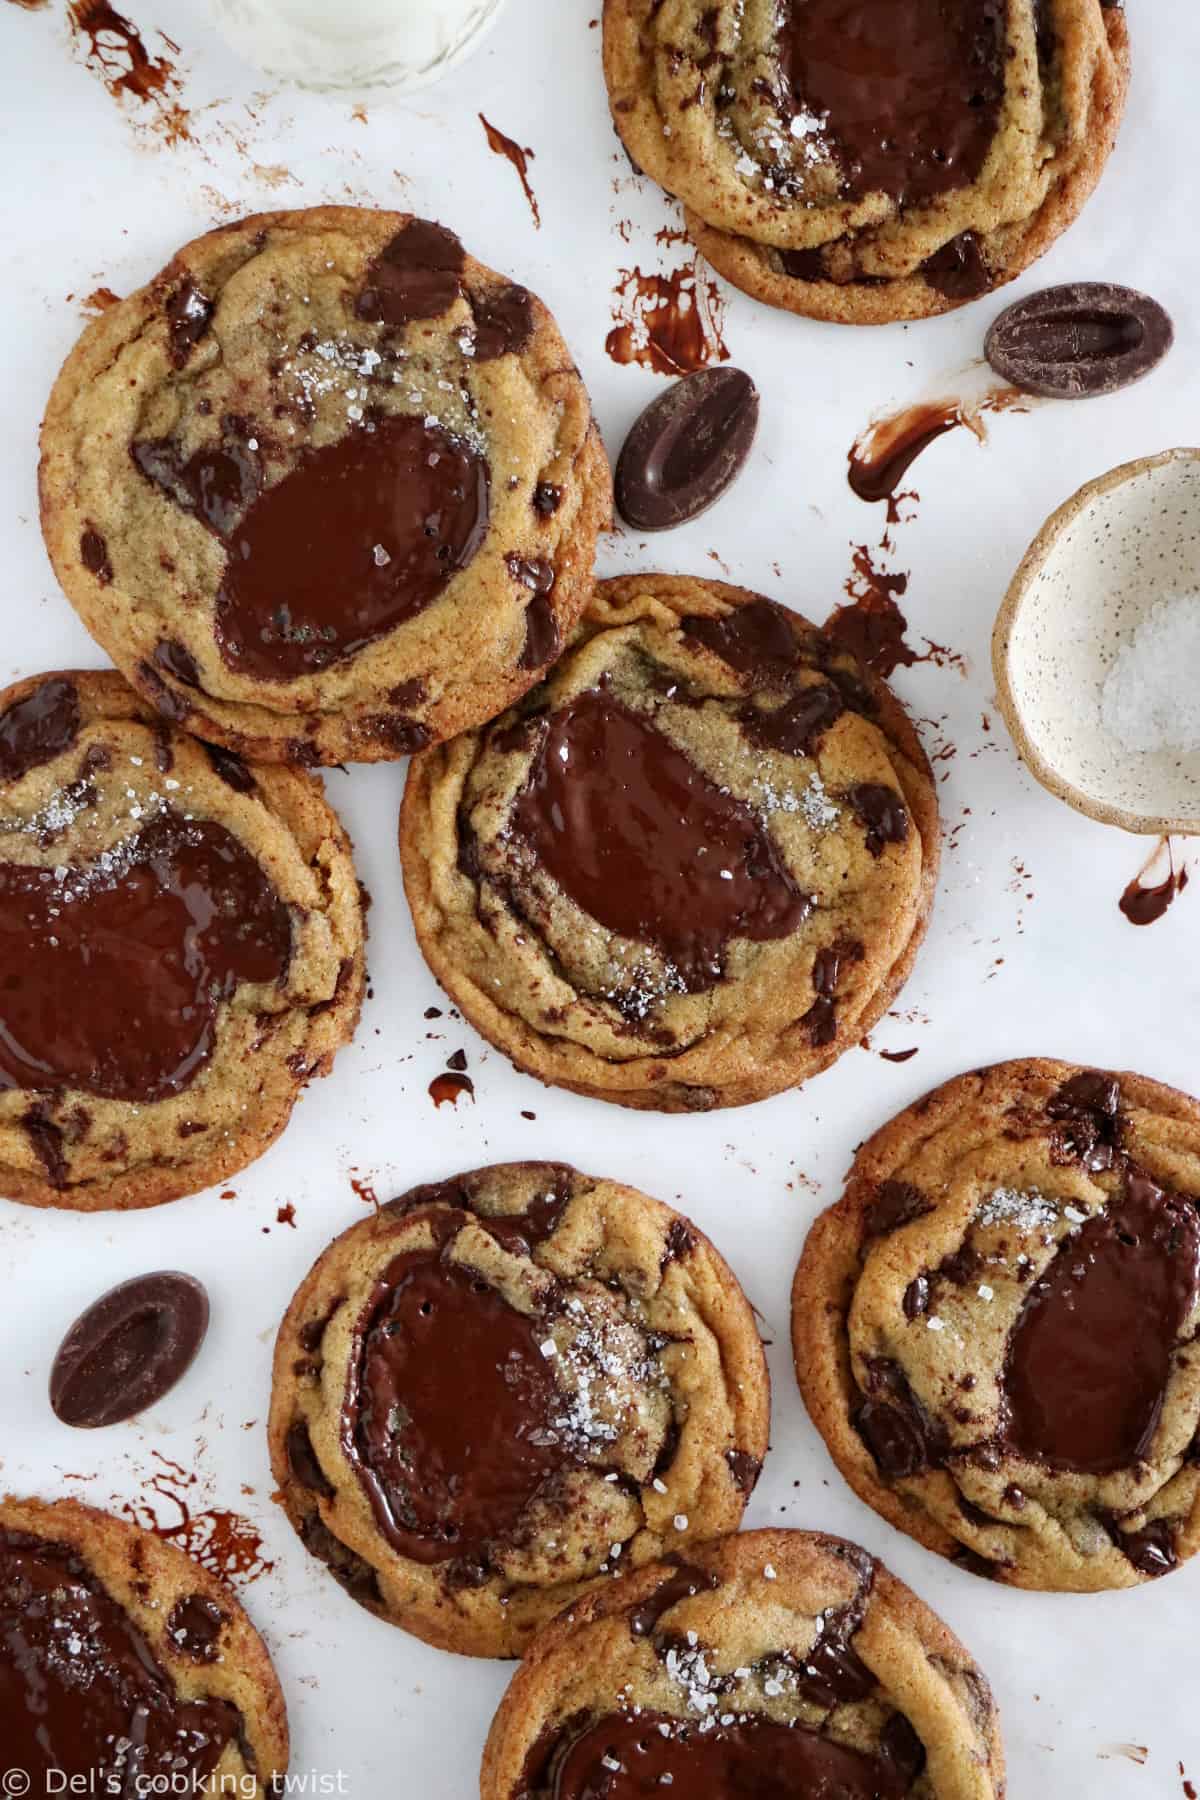 https://www.delscookingtwist.com/wp-content/uploads/2023/03/The-Best-Chocolate-Chip-Cookies_2.jpg